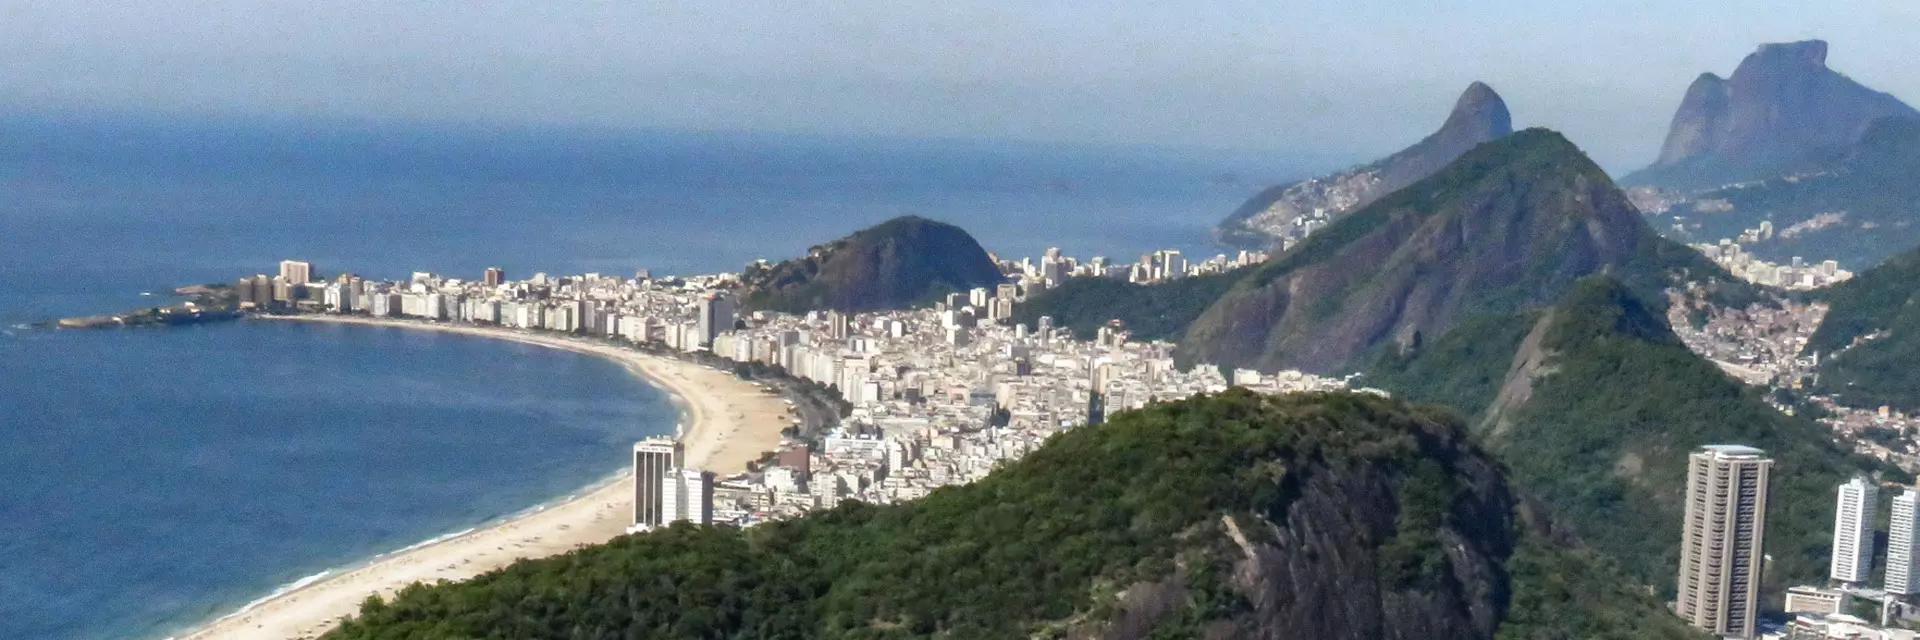 Roteiros de passeios no Rio de Janeiro | 30 roteiros práticos